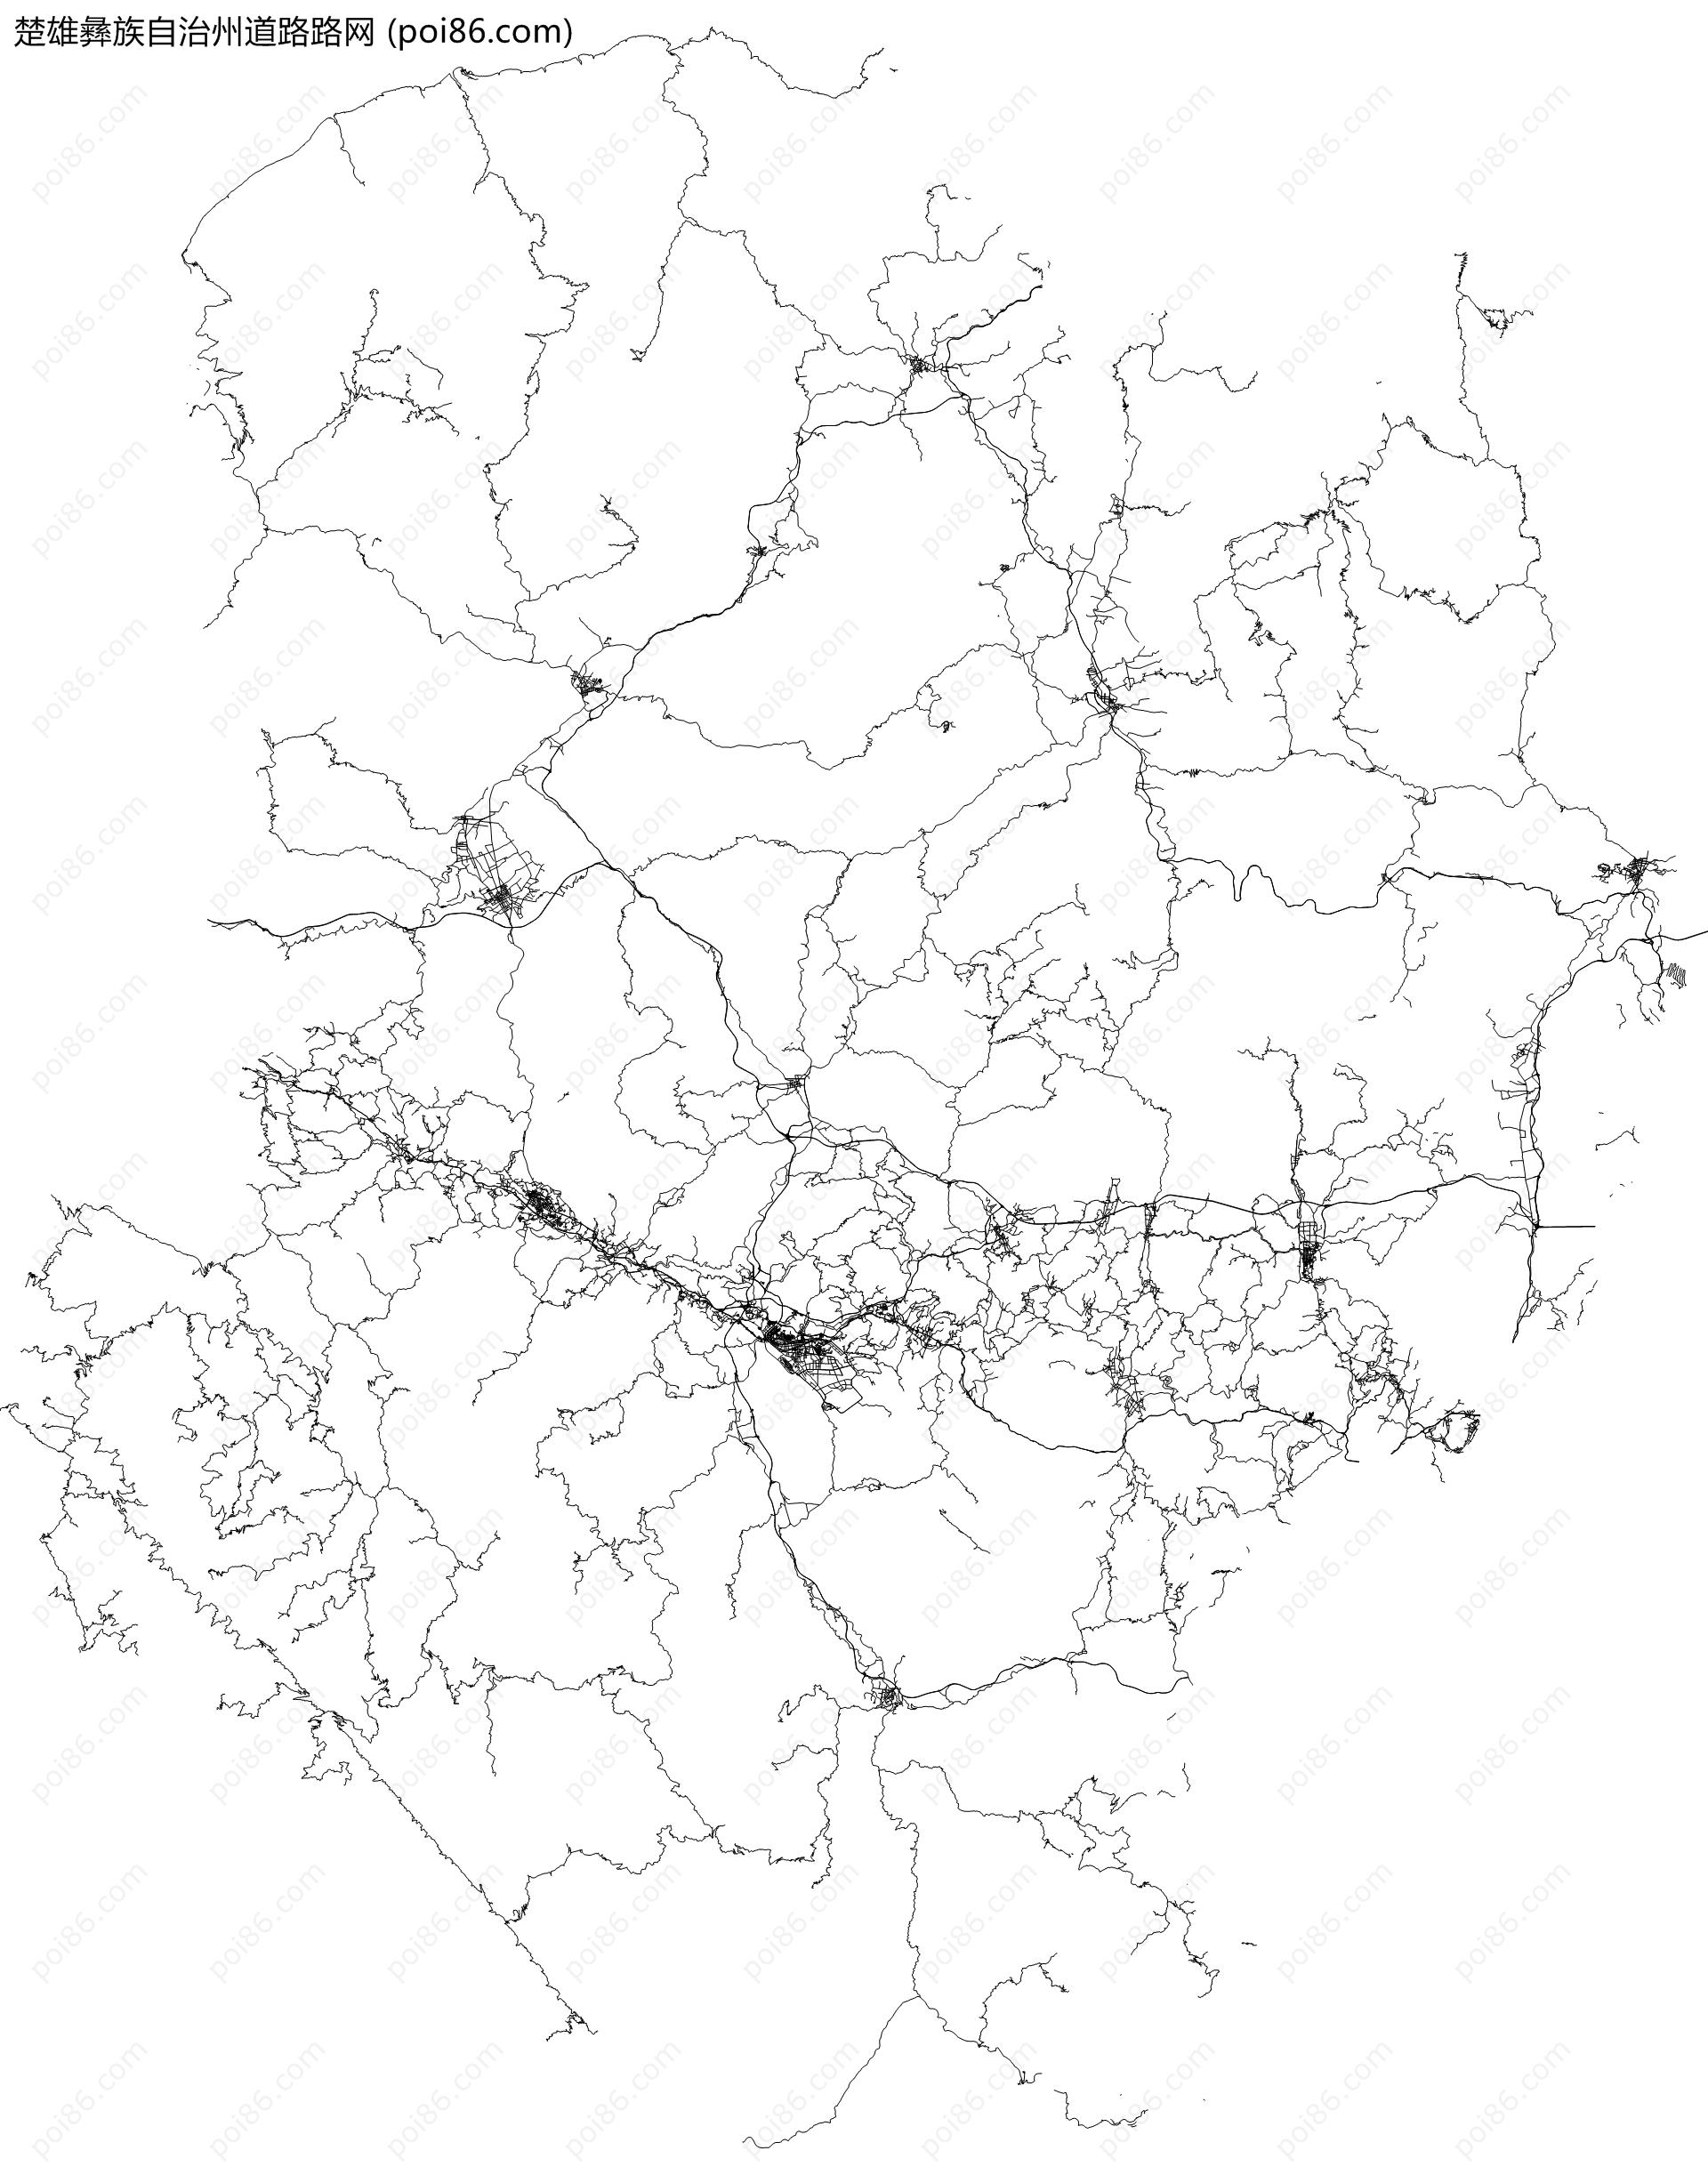 楚雄彝族自治州道路路网地图